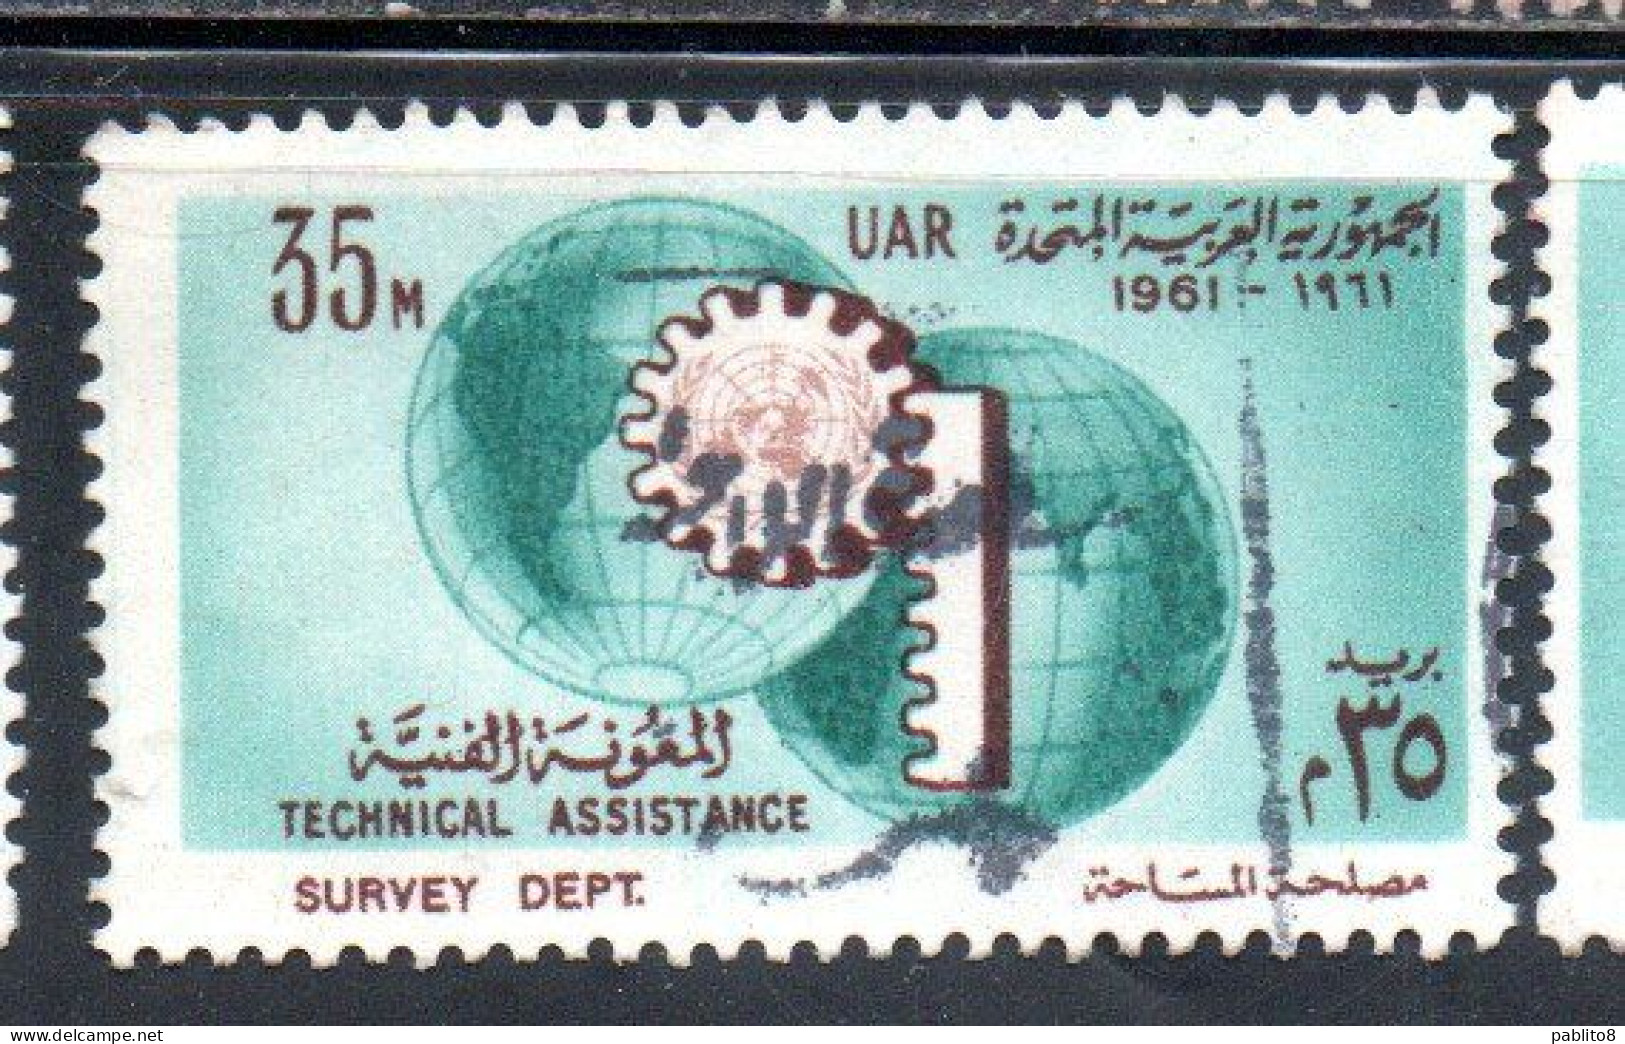 UAR EGYPT EGITTO 1961 UN ONU TECHNICAL ASSISTENCE PROGRAM AND 16th ANNIVERSARY 35m USED USATO OBLITERE' - Usados